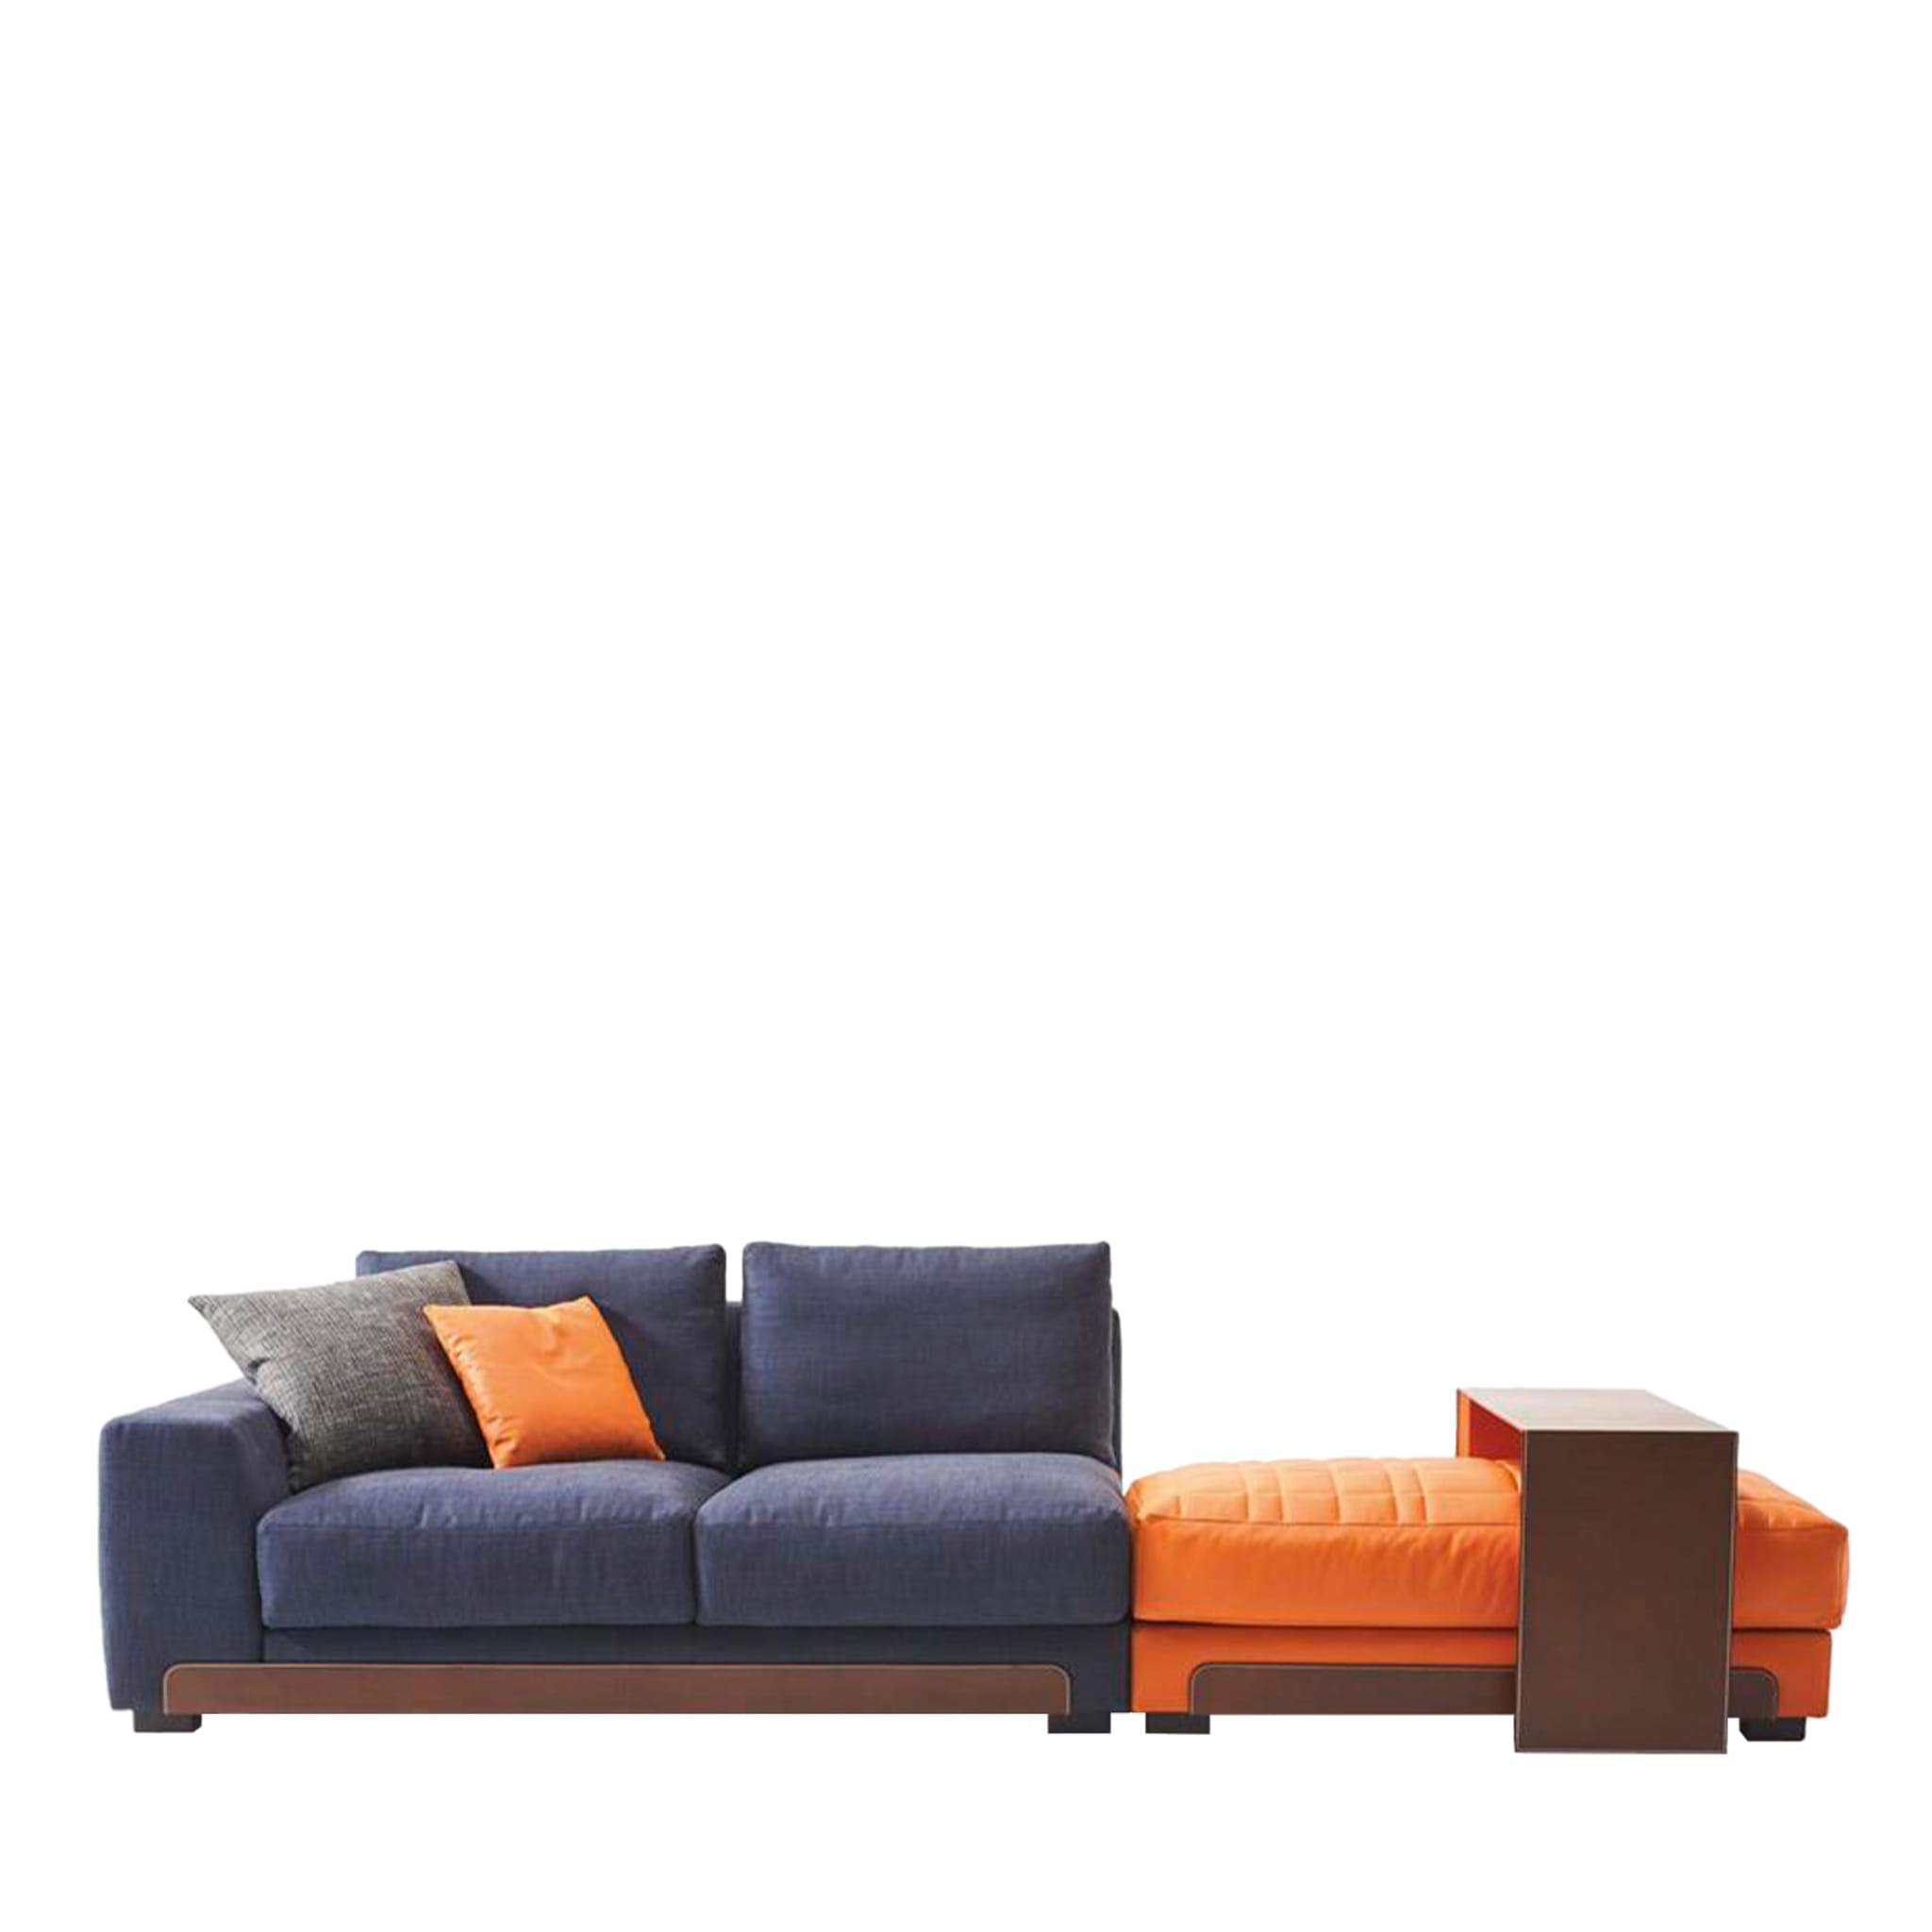 Isola Asymmetrisches Sofa in Blau und Orange - Hauptansicht